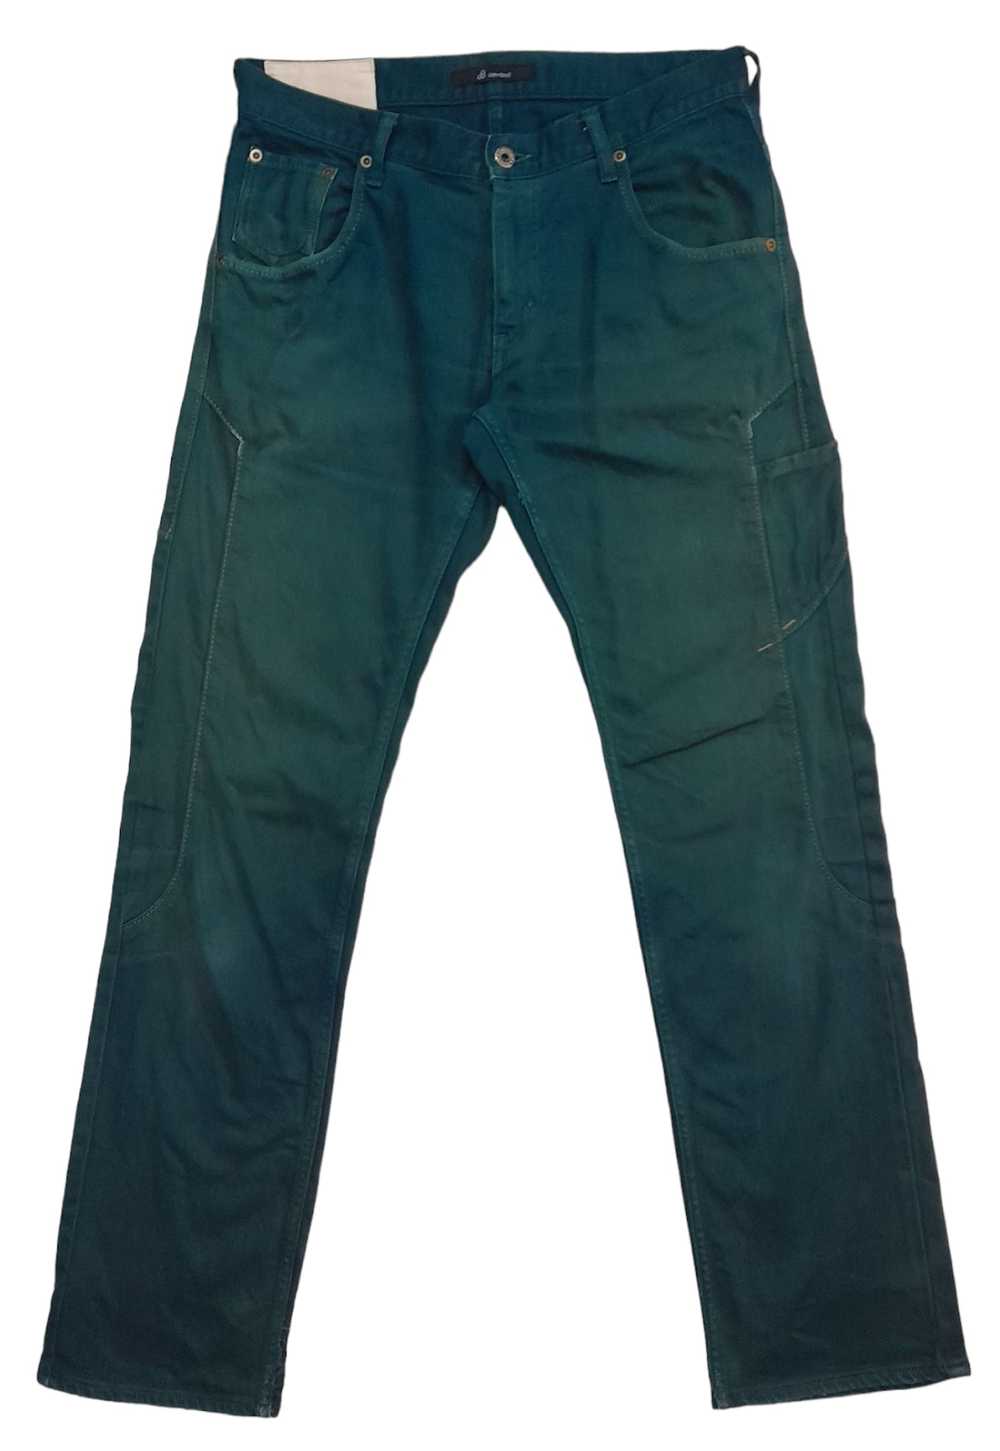 John Bull Johnbull casual pants (S8) - image 2